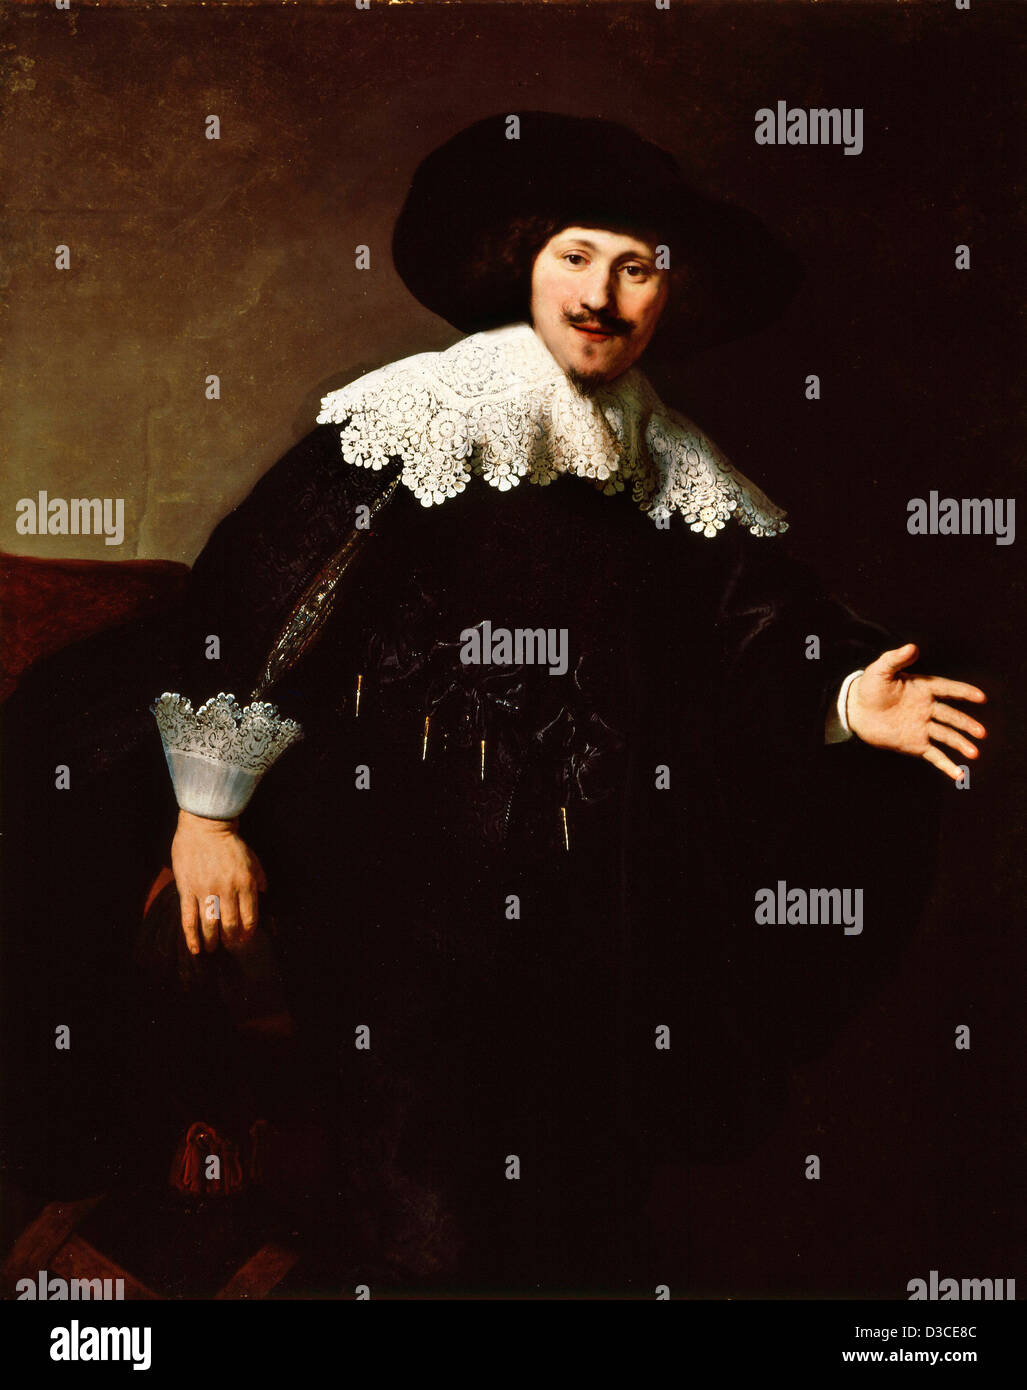 Rembrandt van Rijn, Portrait d'un passant de sa présidence. 1633 Huile sur toile. Baroque. Taft Museum of Art, Cincinnati. Banque D'Images